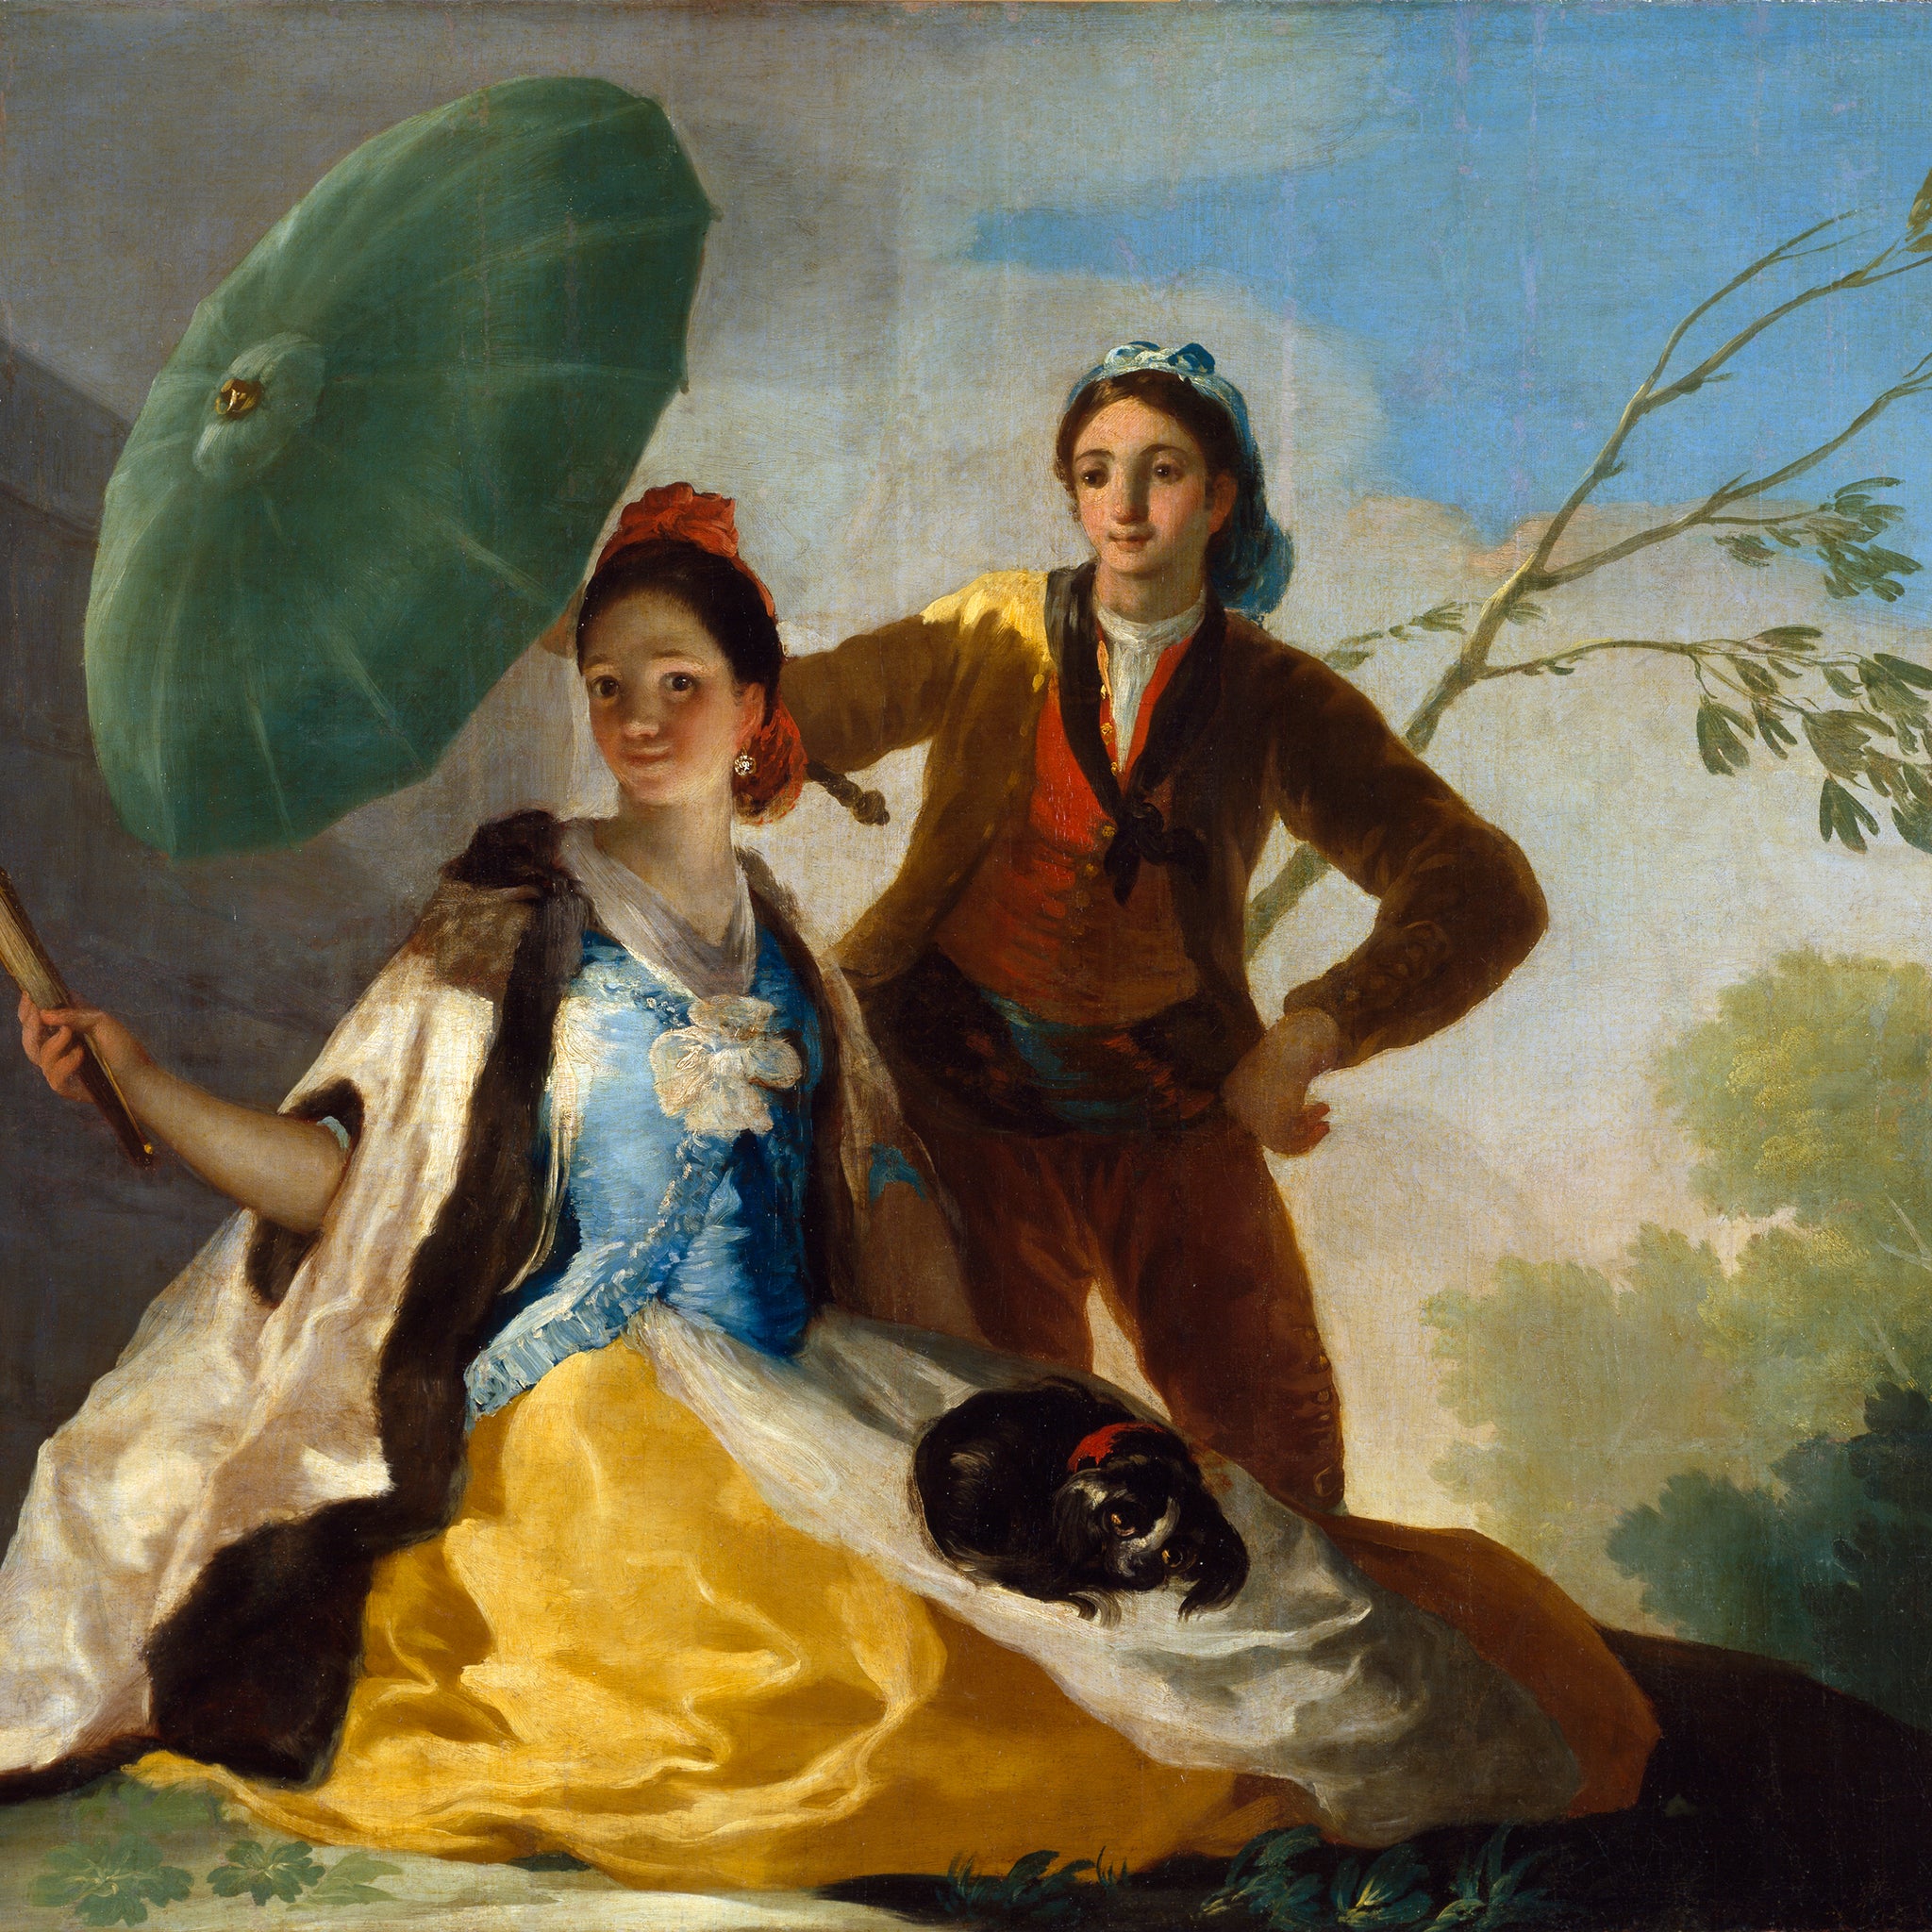 Le parasol - Francisco de Goya